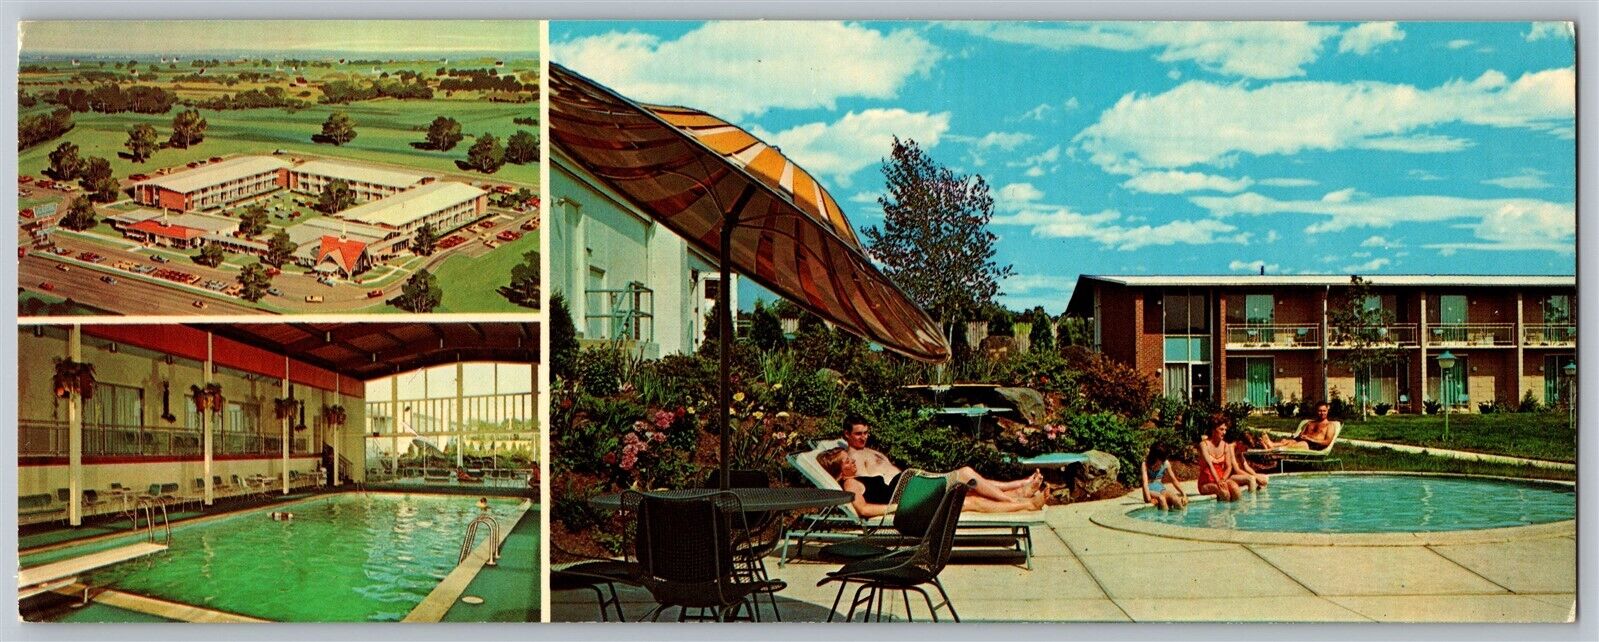 Lancaster PA Howard Johnson\'s Motor Lodge Hotel Motel Vtg Postcard Oversized UNP